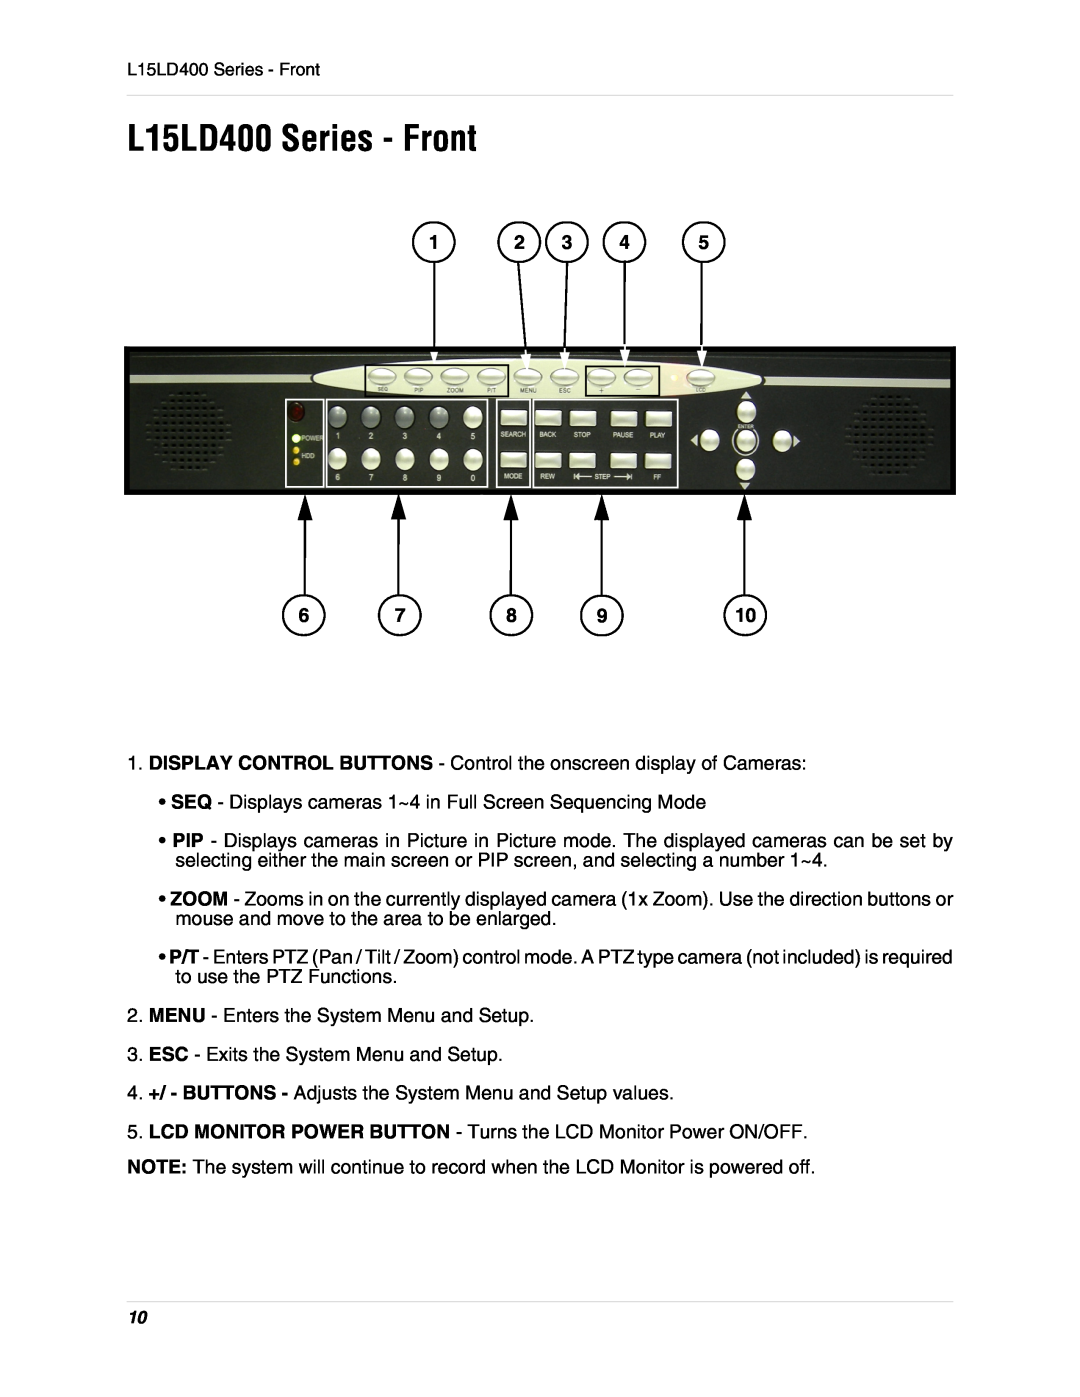 LOREX Technology L15D400 instruction manual L15LD400 Series - Front 